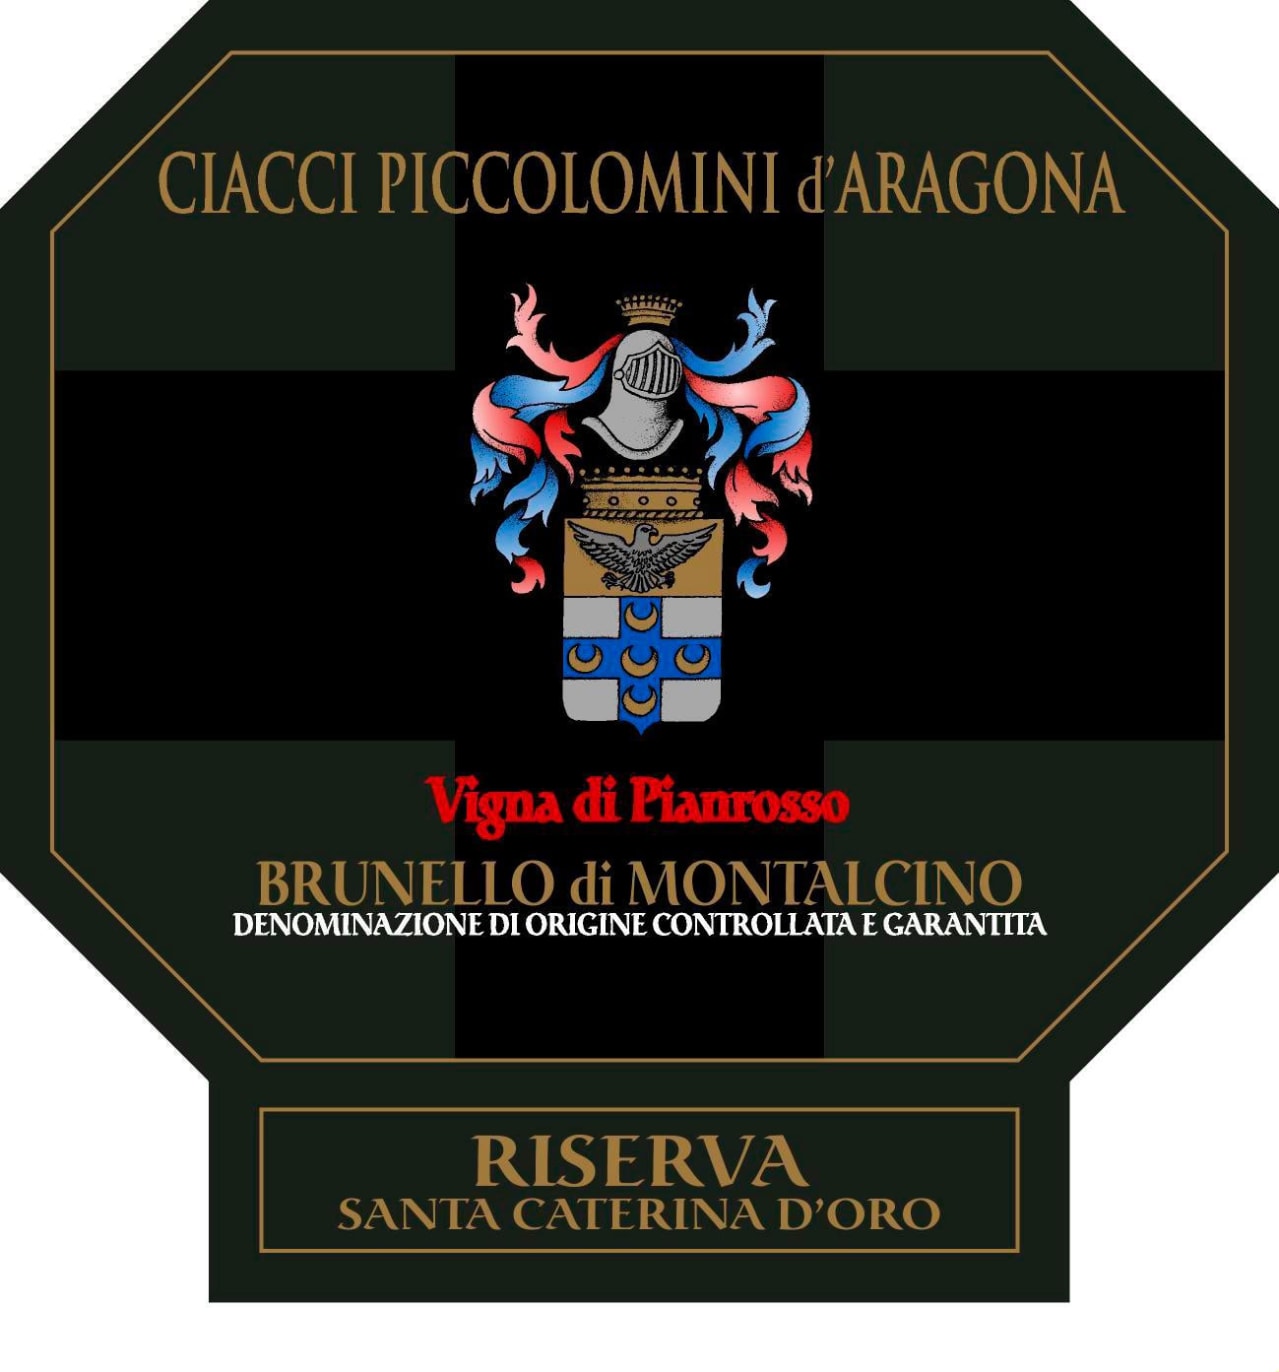 Ciacci Brunello di Montalcino "Vigna di Pianrosso" Riserva Santa Catrina d'Oro (2016)